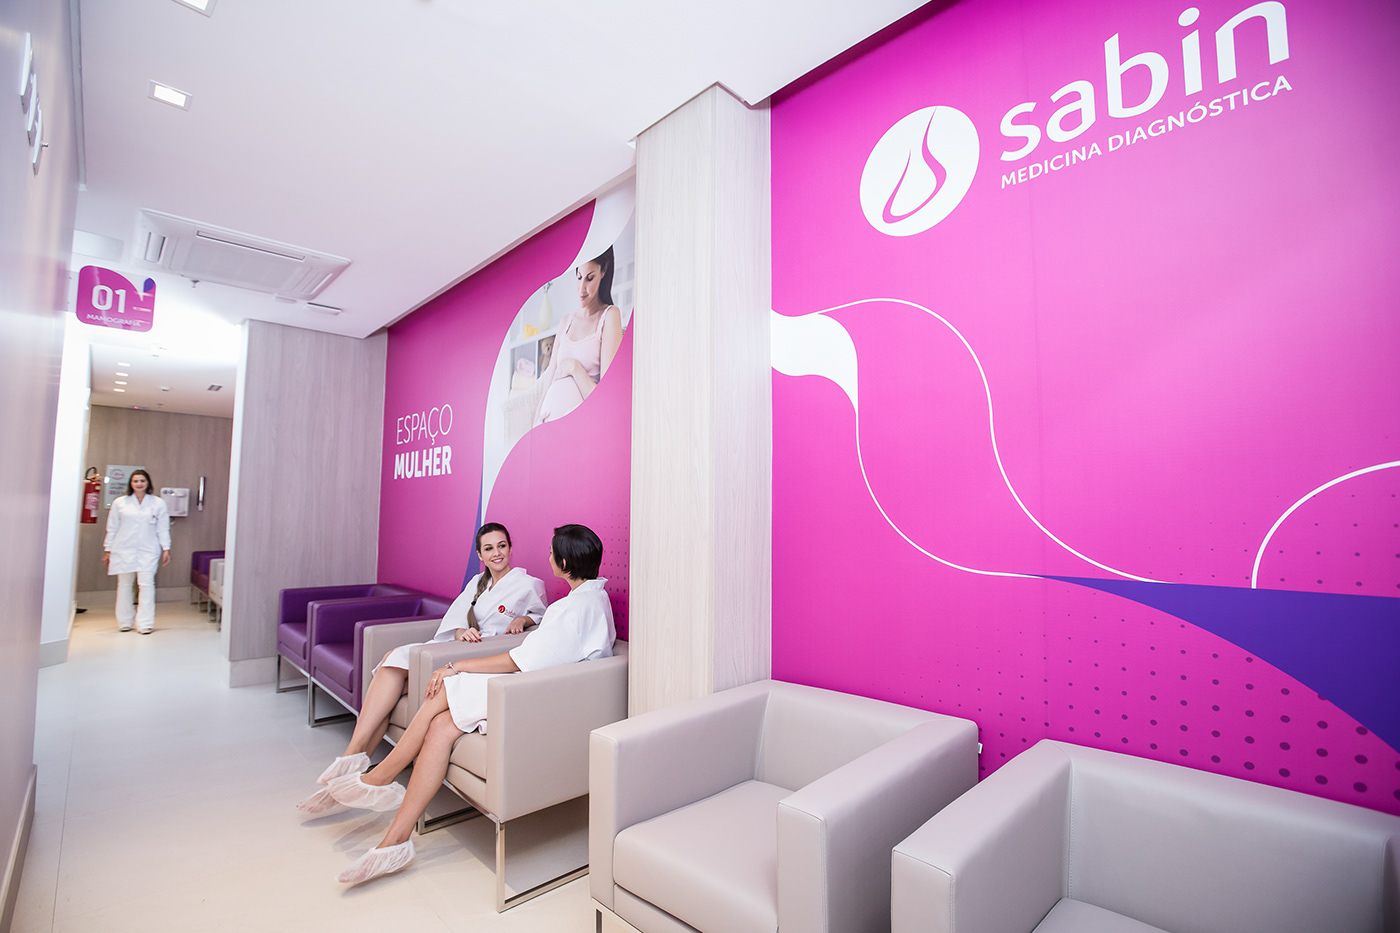 Sabin Signage Sinalização laboratorio Imagem Medicina Diagnóstica